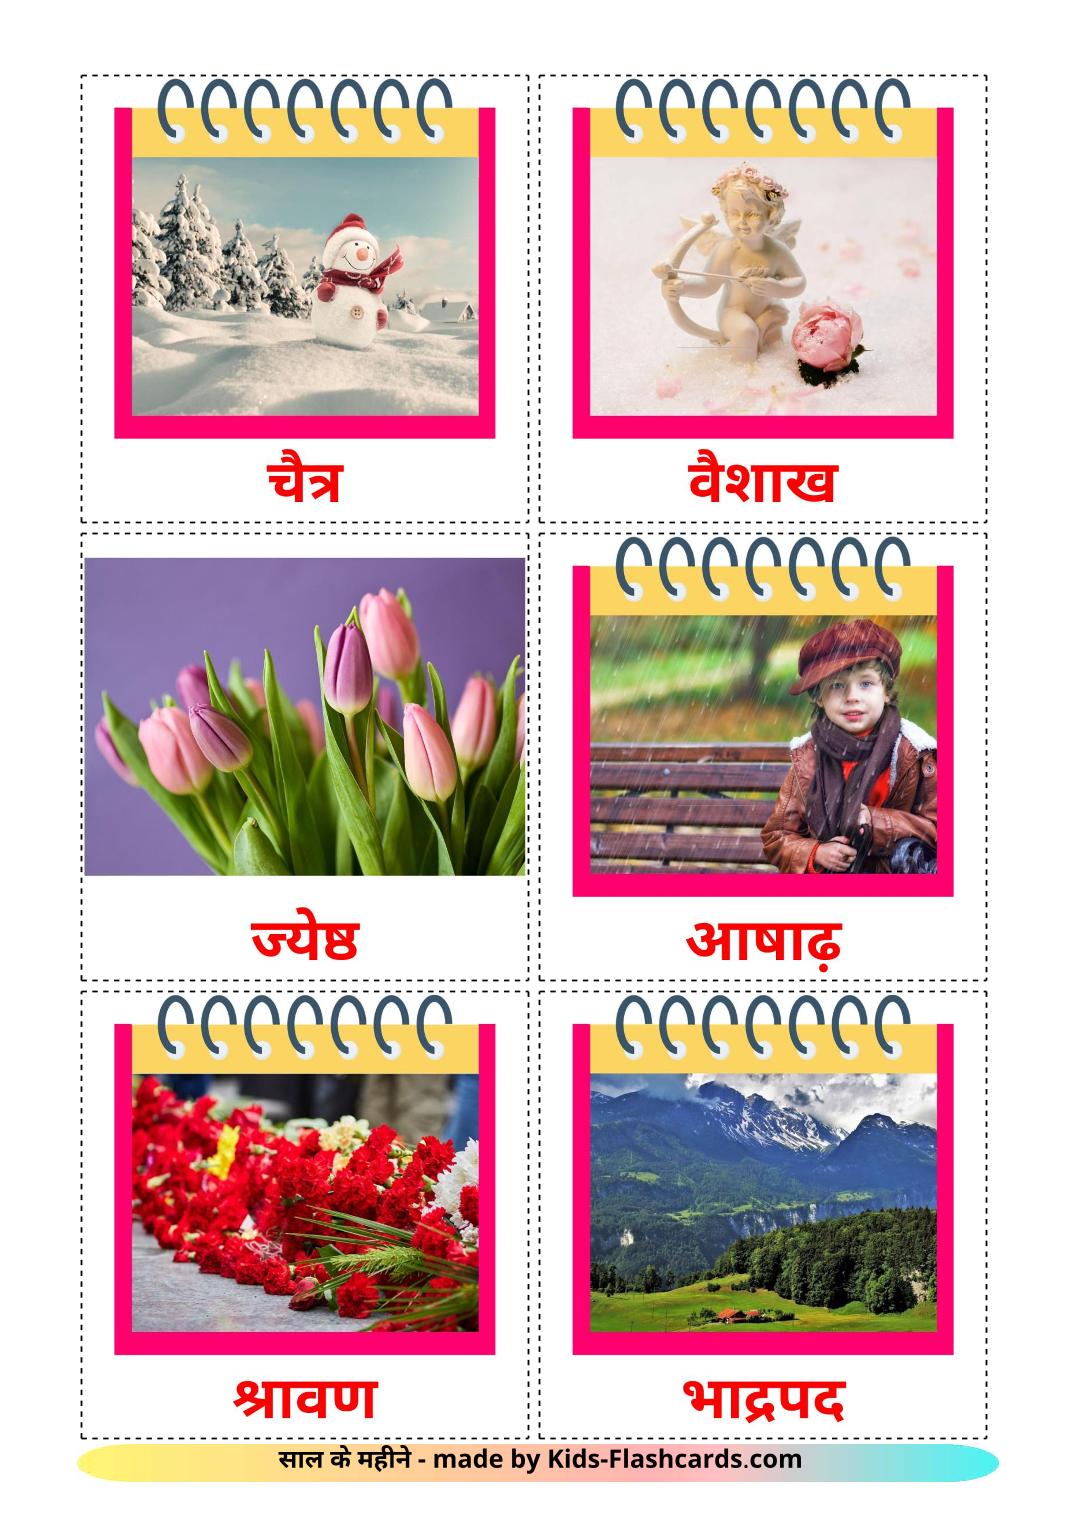 Meses do ano - 12 Flashcards hindies gratuitos para impressão